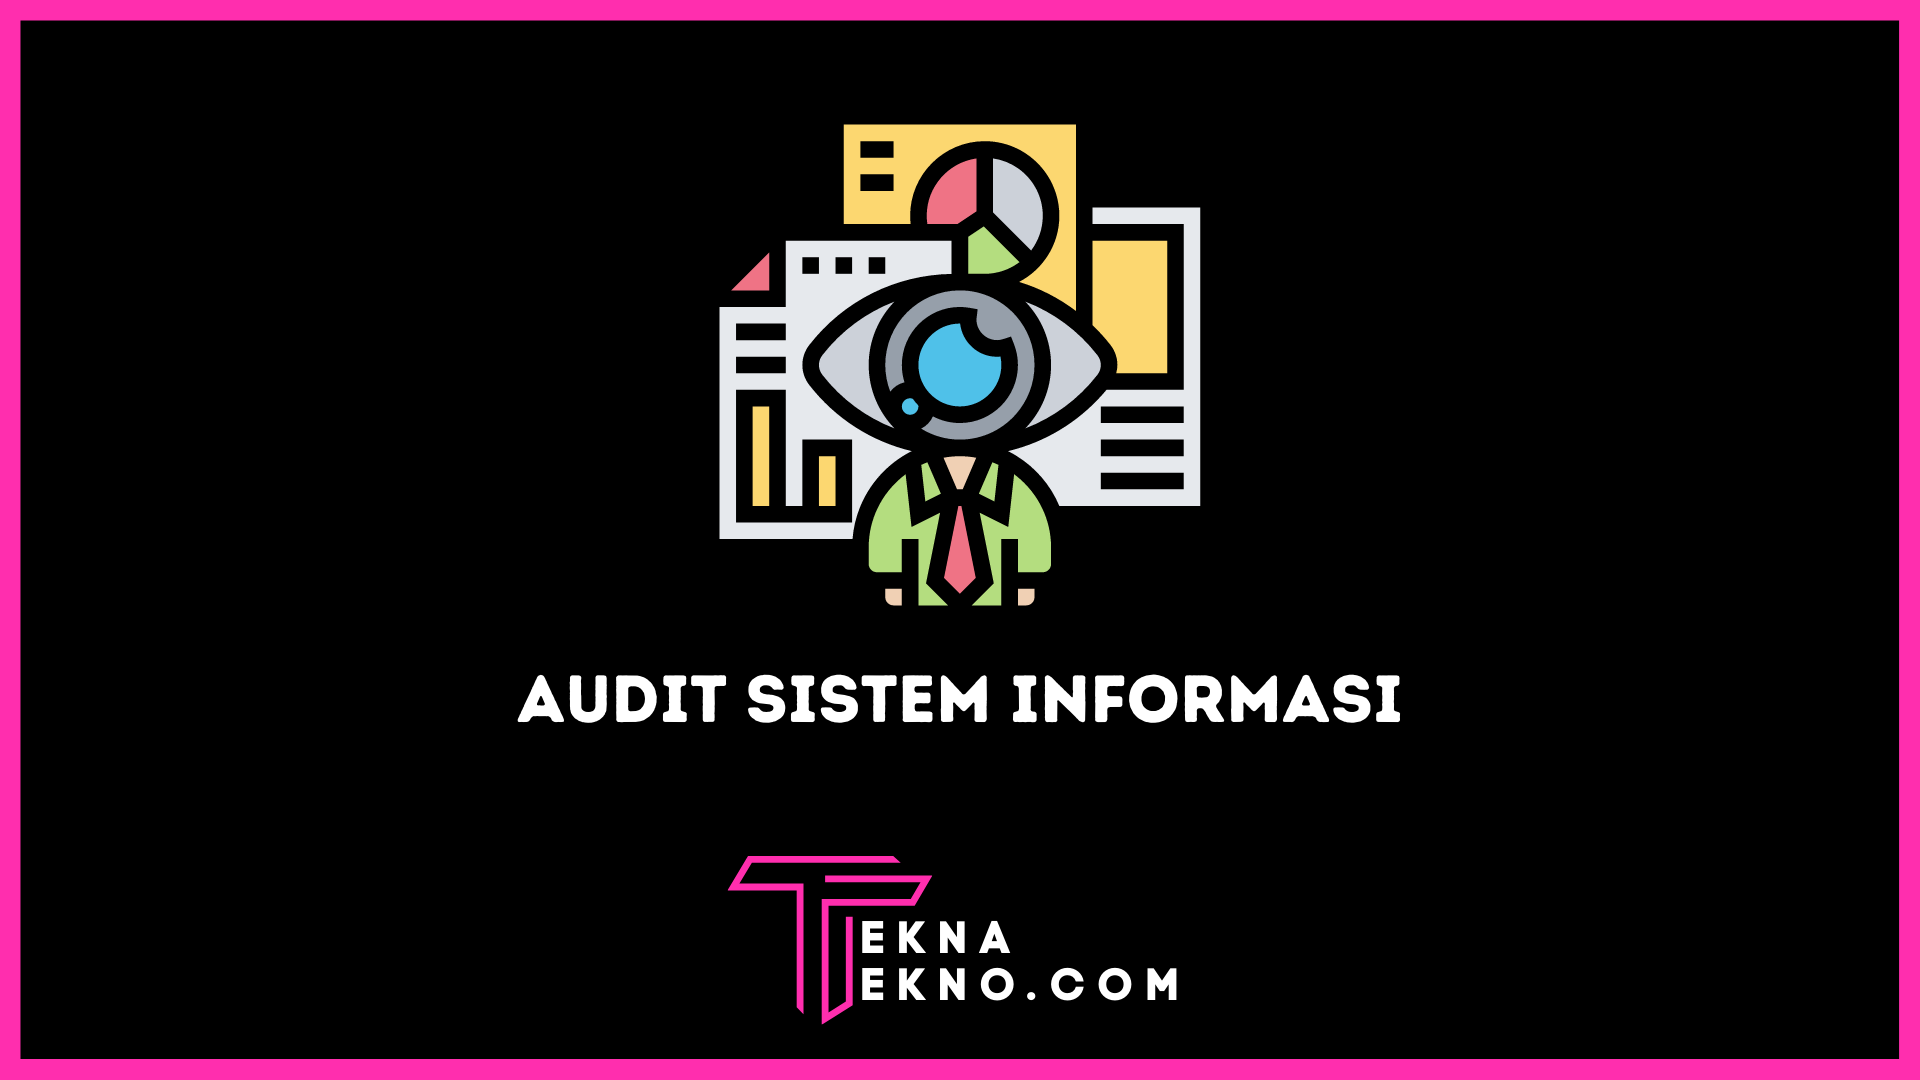 Apa itu Audit Sistem Informasi? Definisi, Tujuan, dan Jenisnya